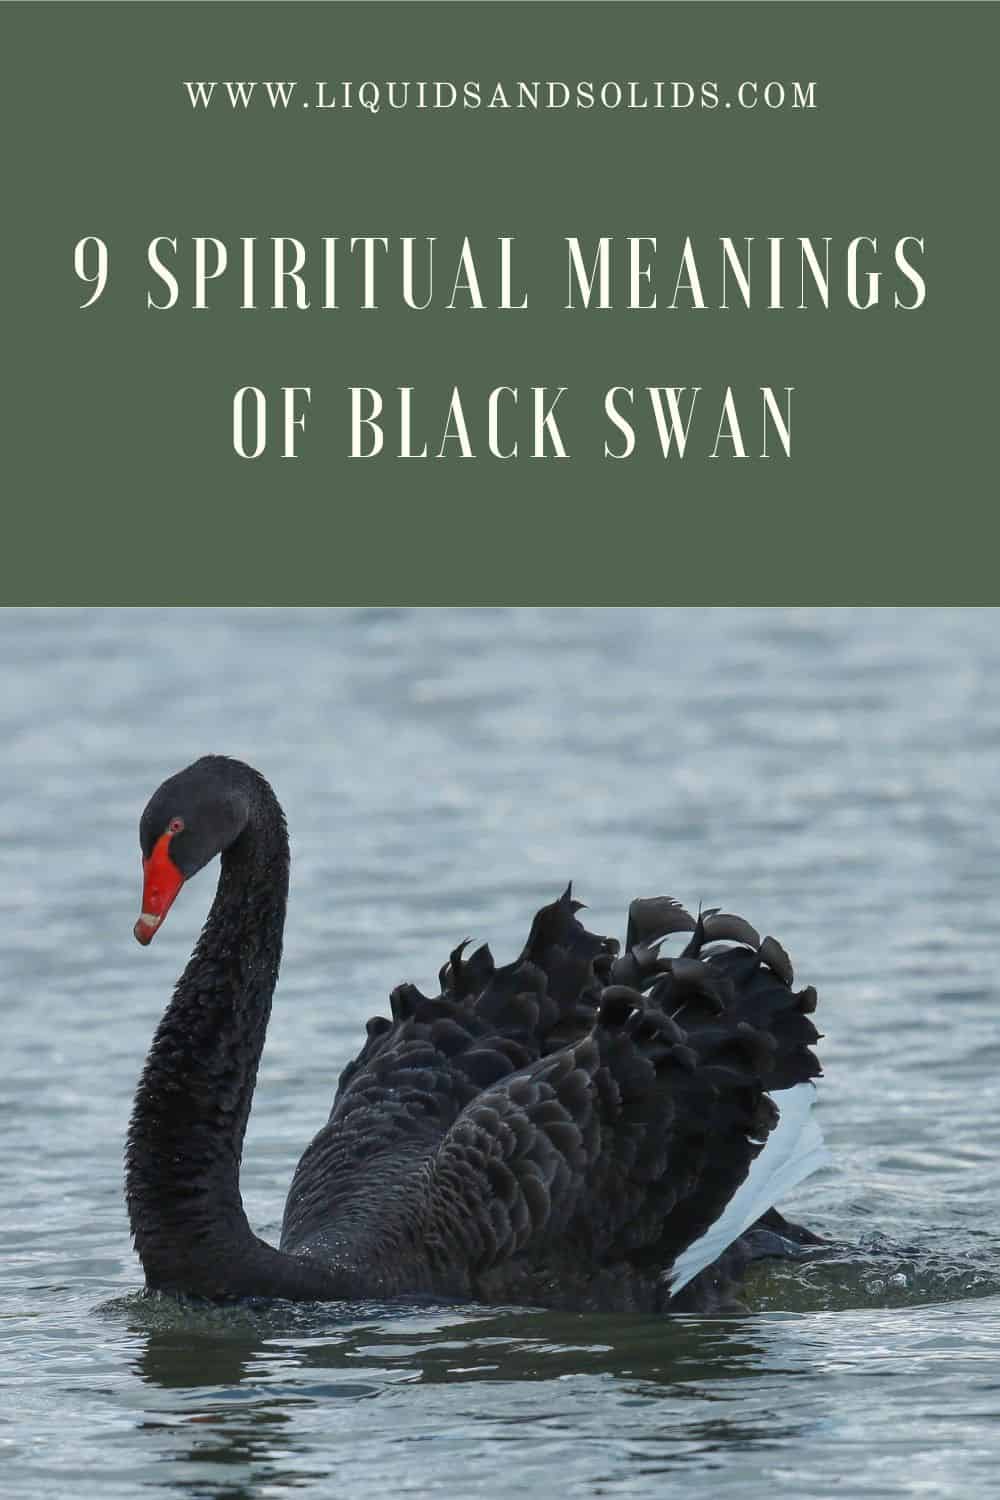  9 Musta luige vaimset tähendust